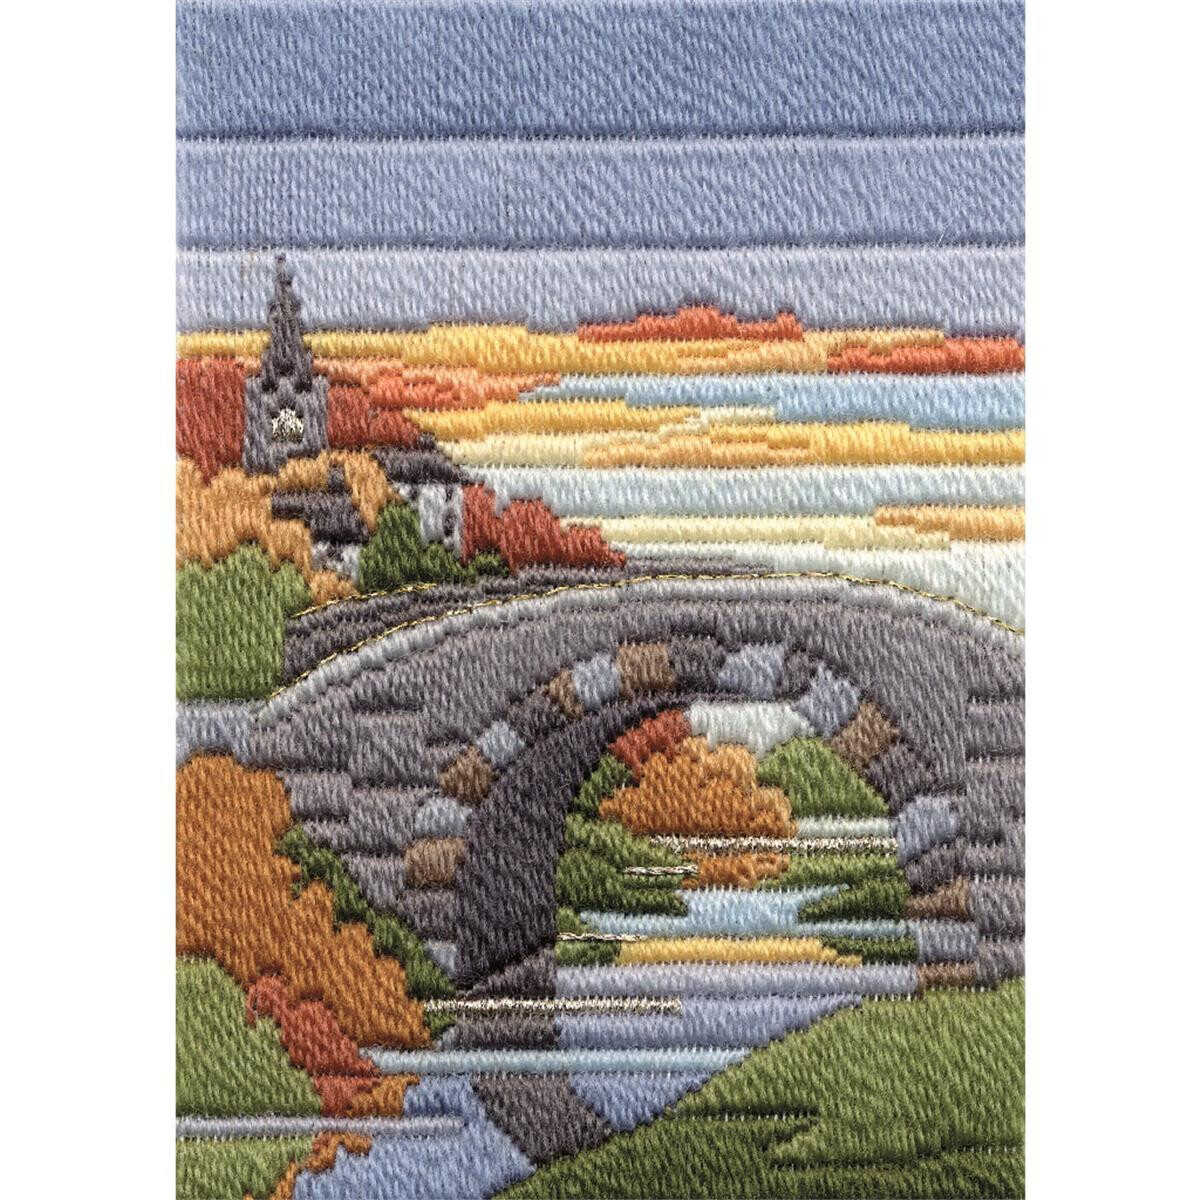 Вышитая сцена каменного моста через реку с разноцветными...